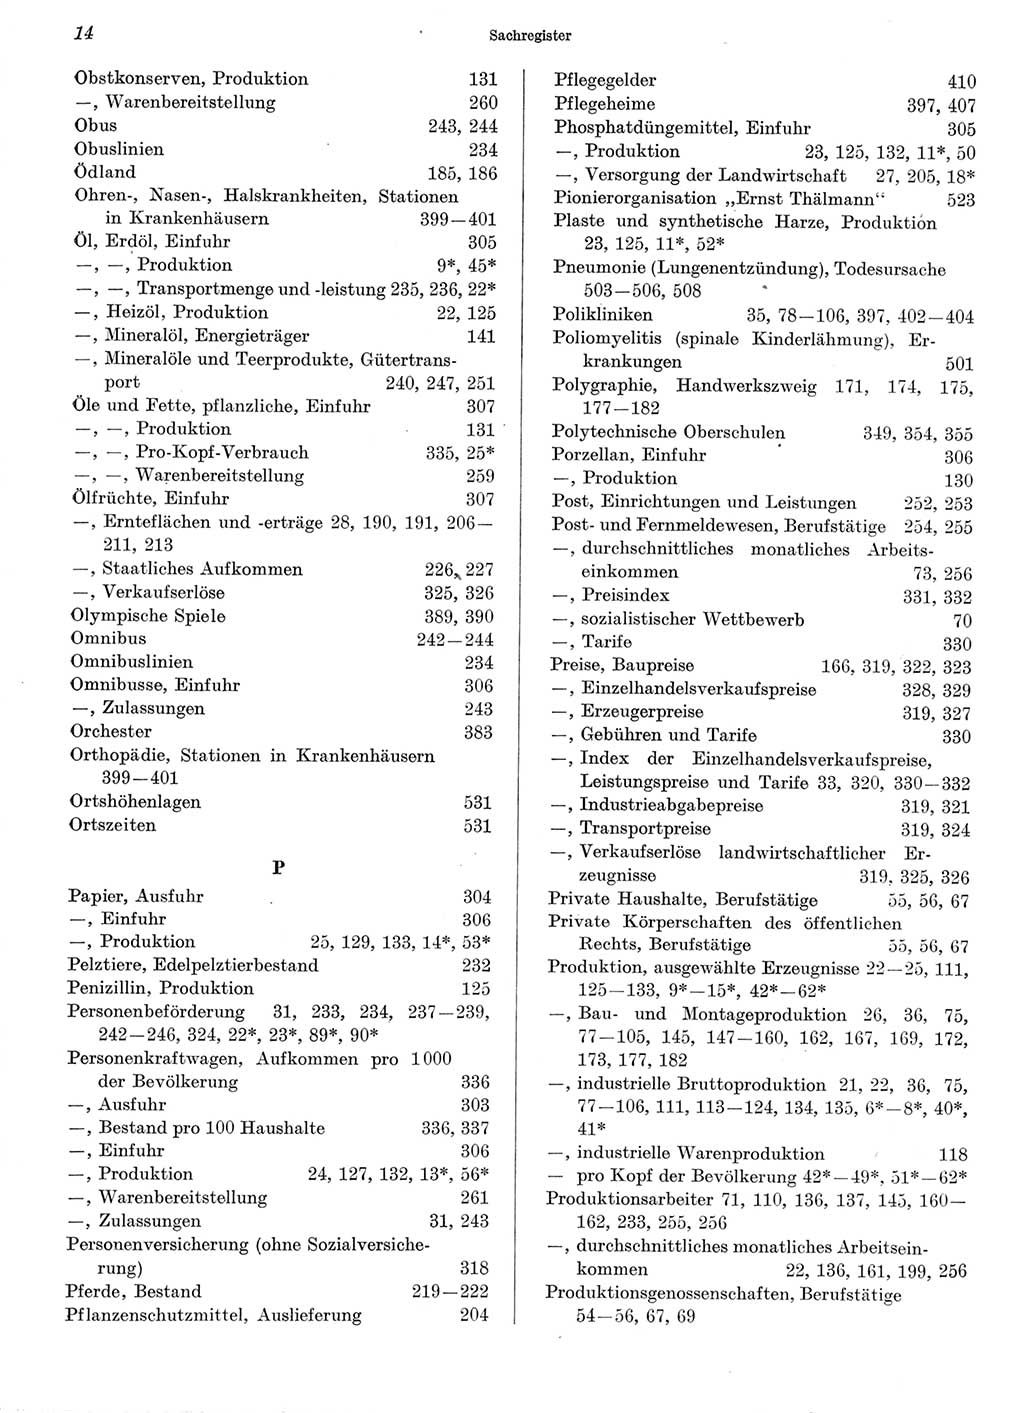 Statistisches Jahrbuch der Deutschen Demokratischen Republik (DDR) 1973, Seite 14 (Stat. Jb. DDR 1973, S. 14)